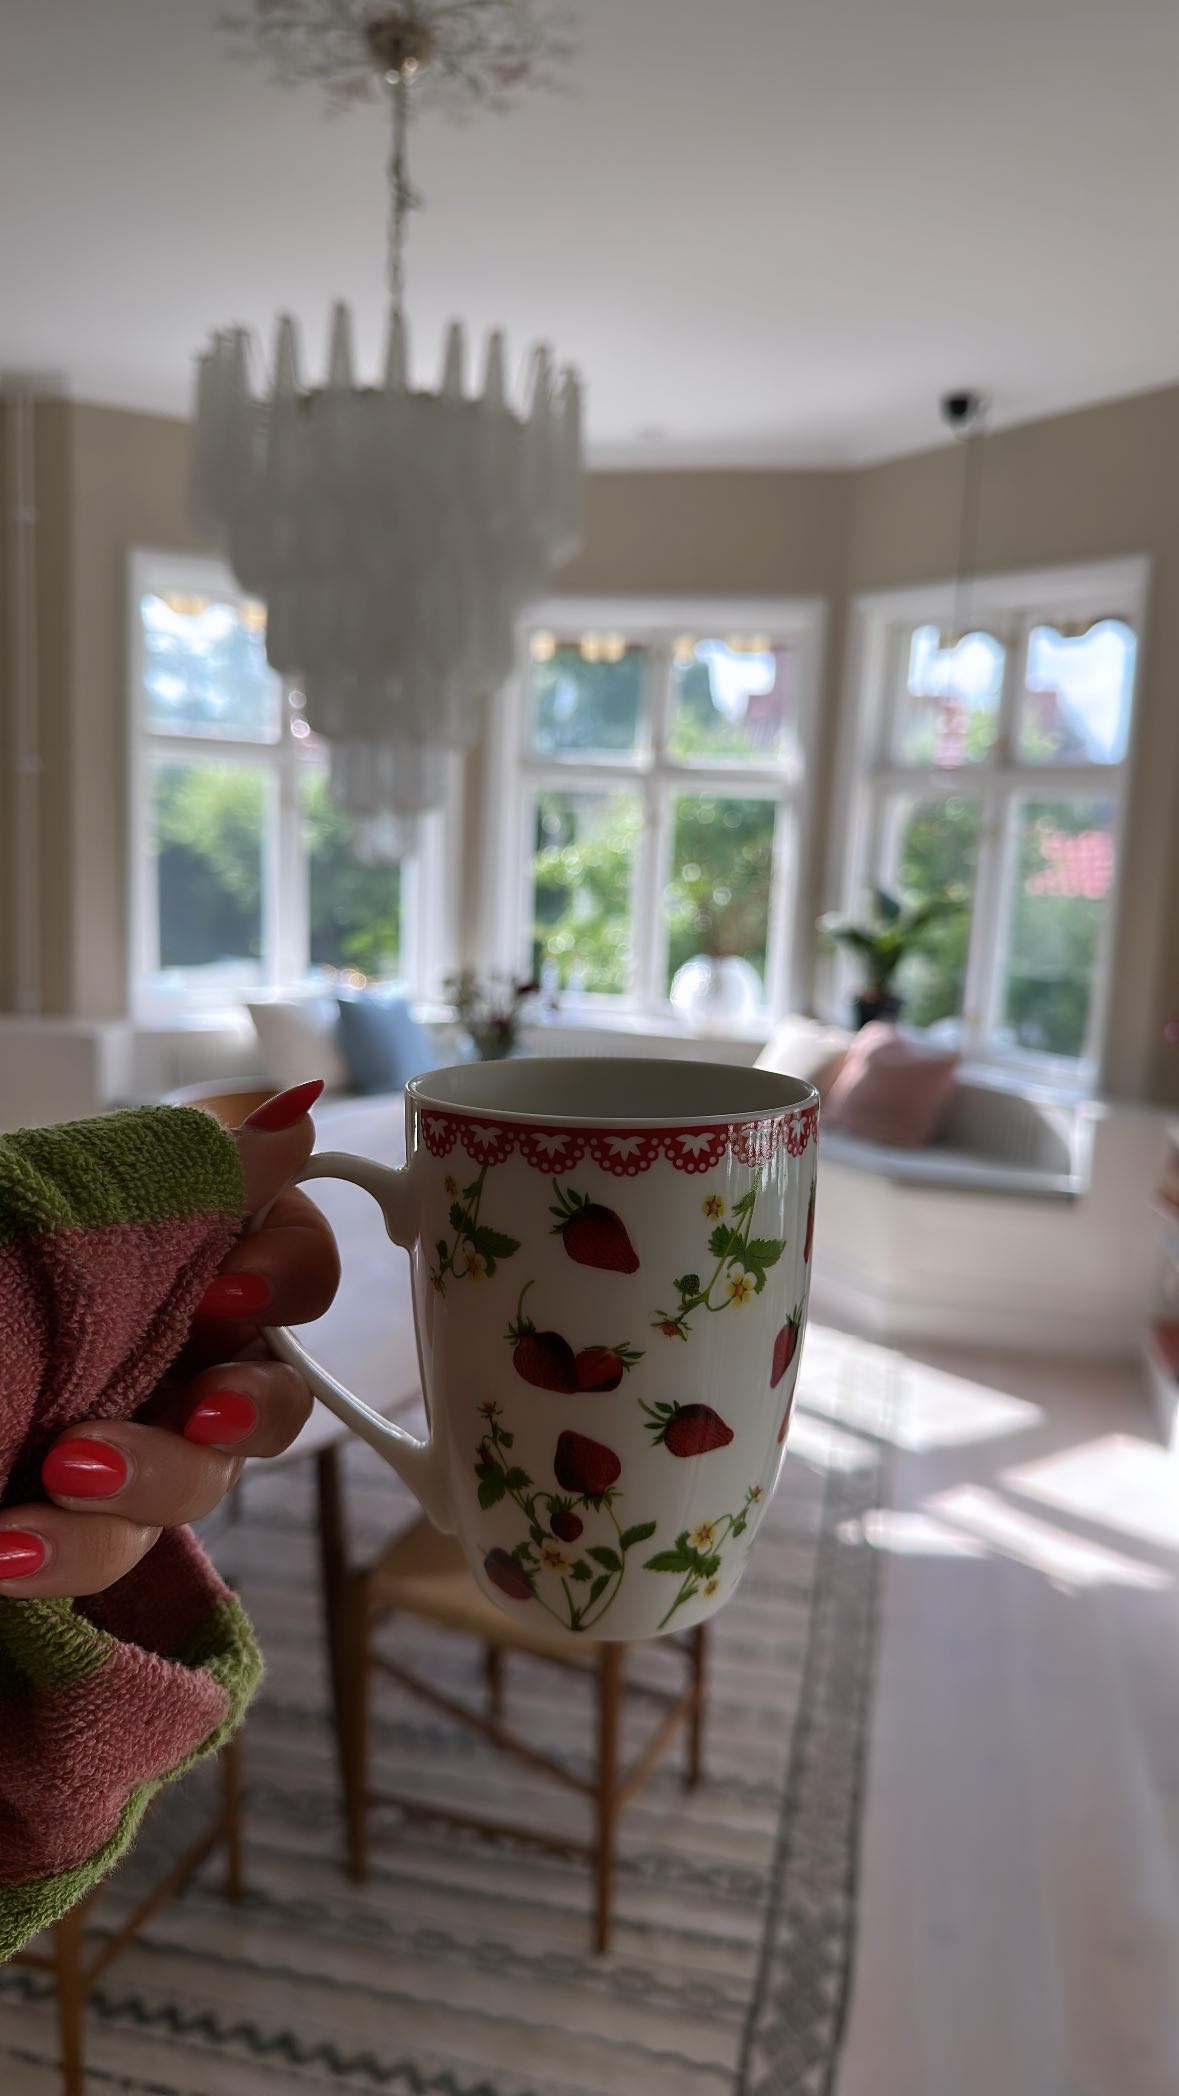 Maja teilte auf Instagram eine Tasse Kaffee und einen Einblick in ihr Zuhause